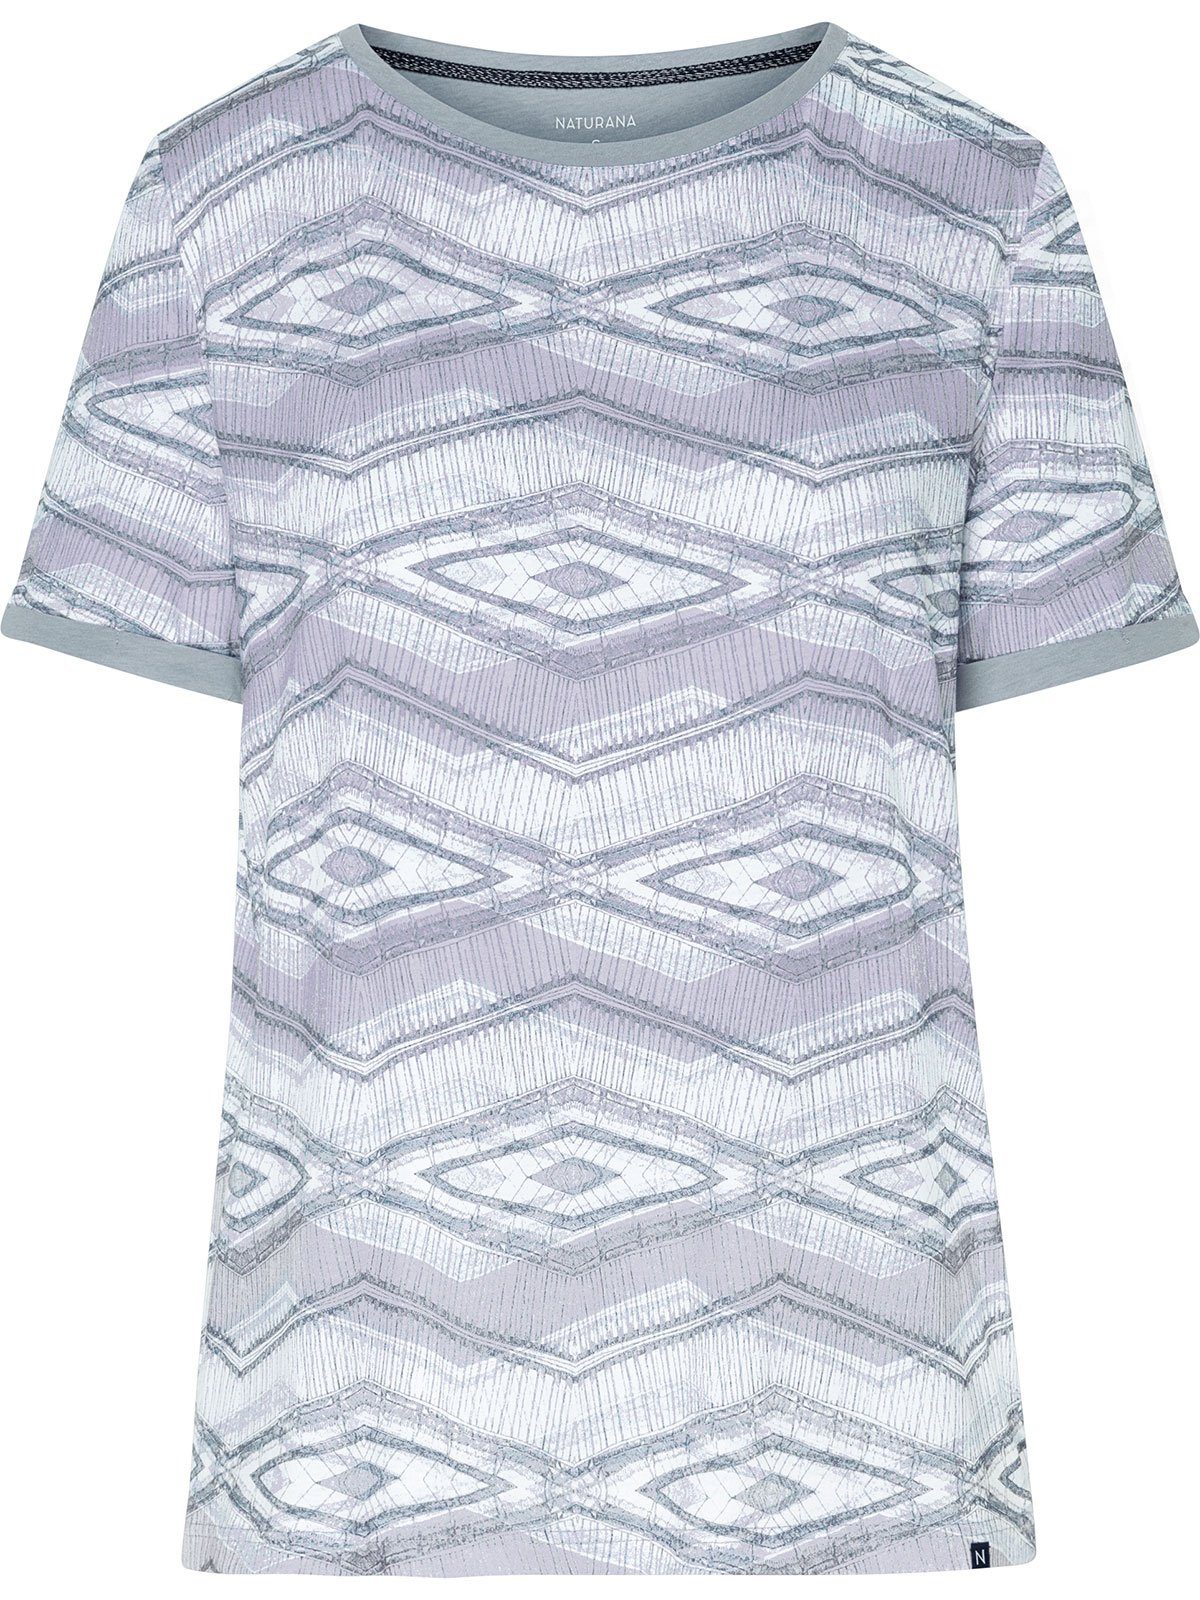 Damen Shirts Naturana T-Shirt Damen T-Shirt Loungewear (Stück, 1-tlg) Materialmix